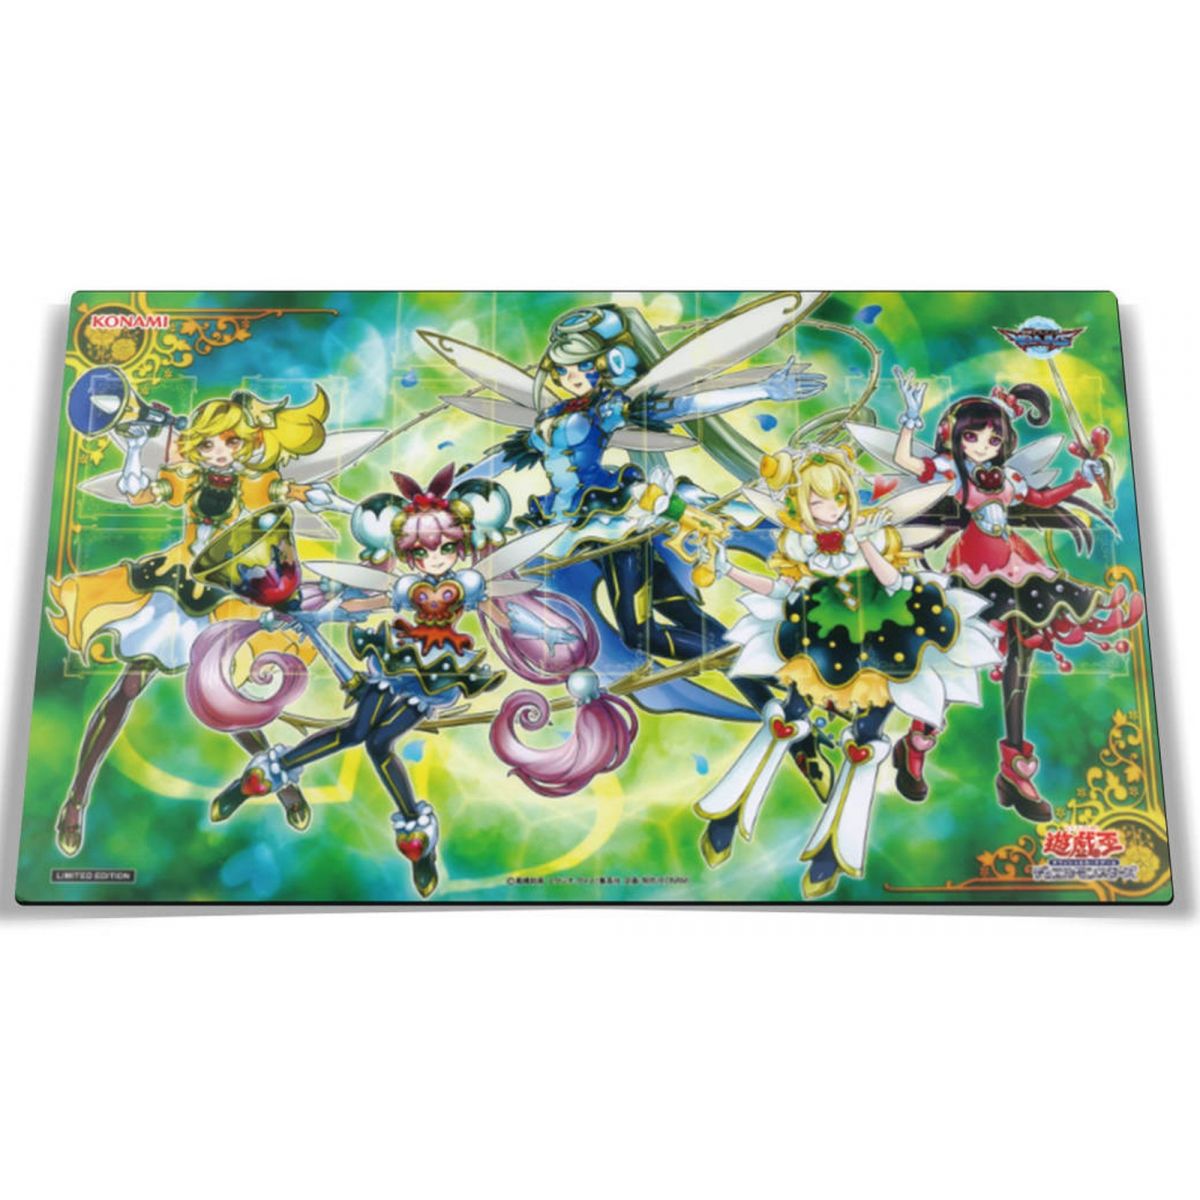 Yu Gi Oh! - Playmat - Trickstar Limited Edition - OCG